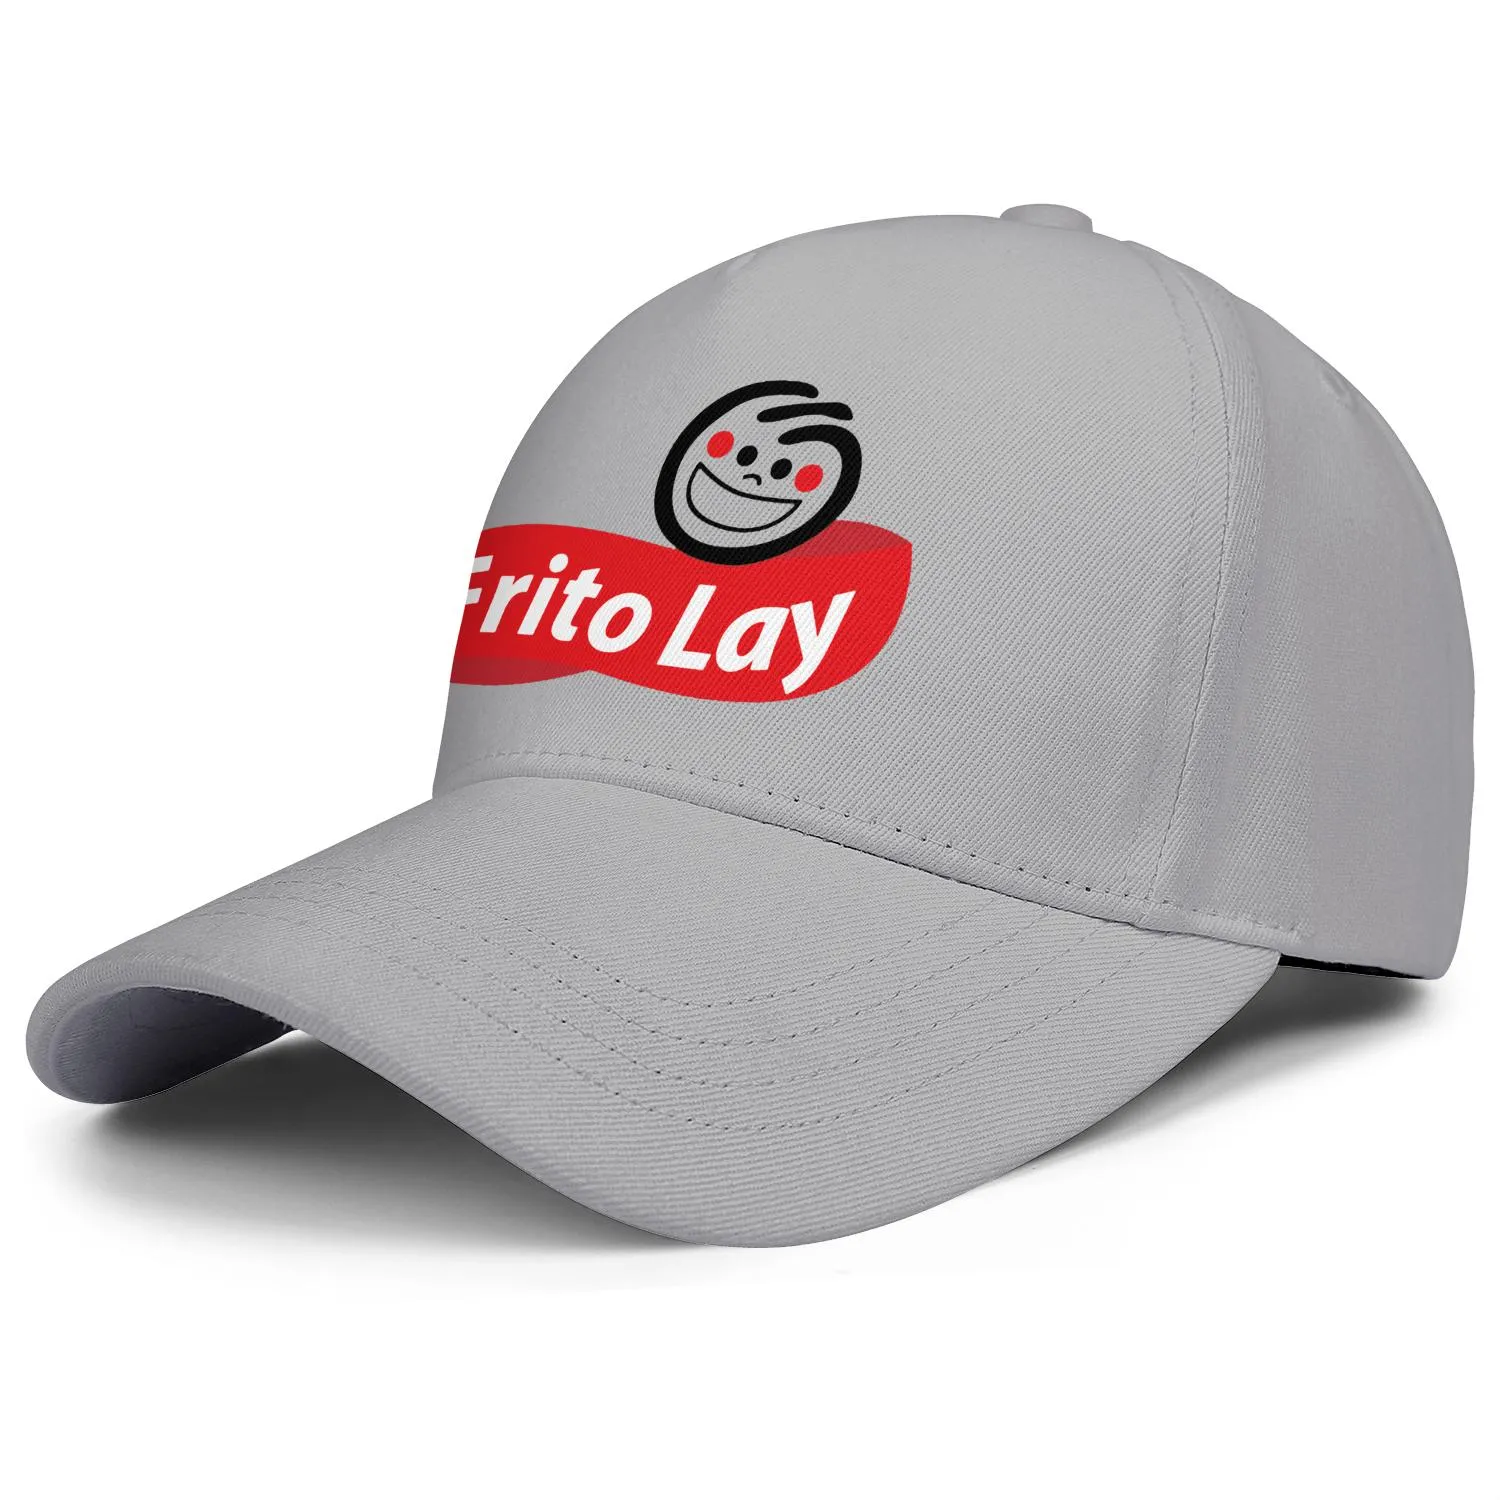 Fritos-Lays casquette de camionneur réglable pour hommes et femmes, casquette de baseball personnalisée vierge, logo Frito-Lay Potato Chips Frito303z